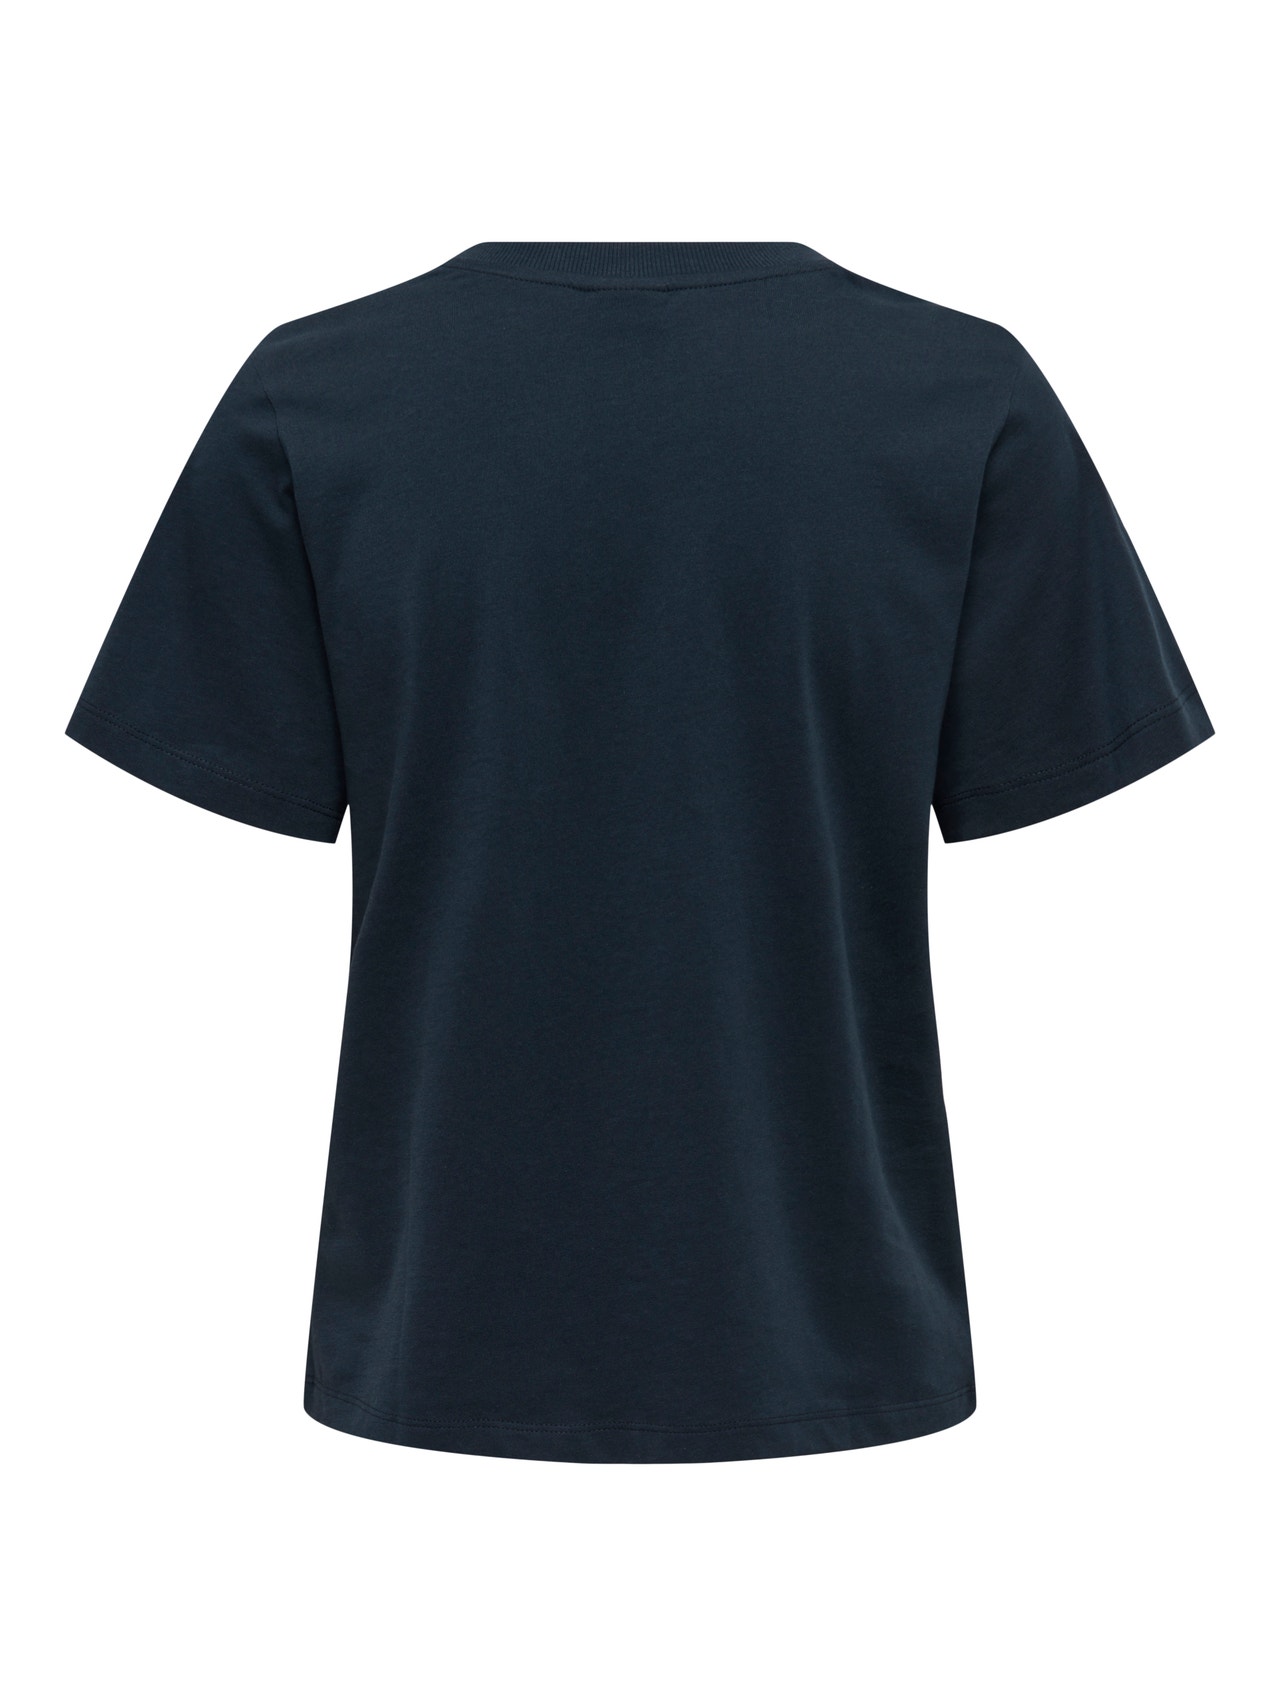 ONLY o-neck t-shirt -Sky Captain - 15292431